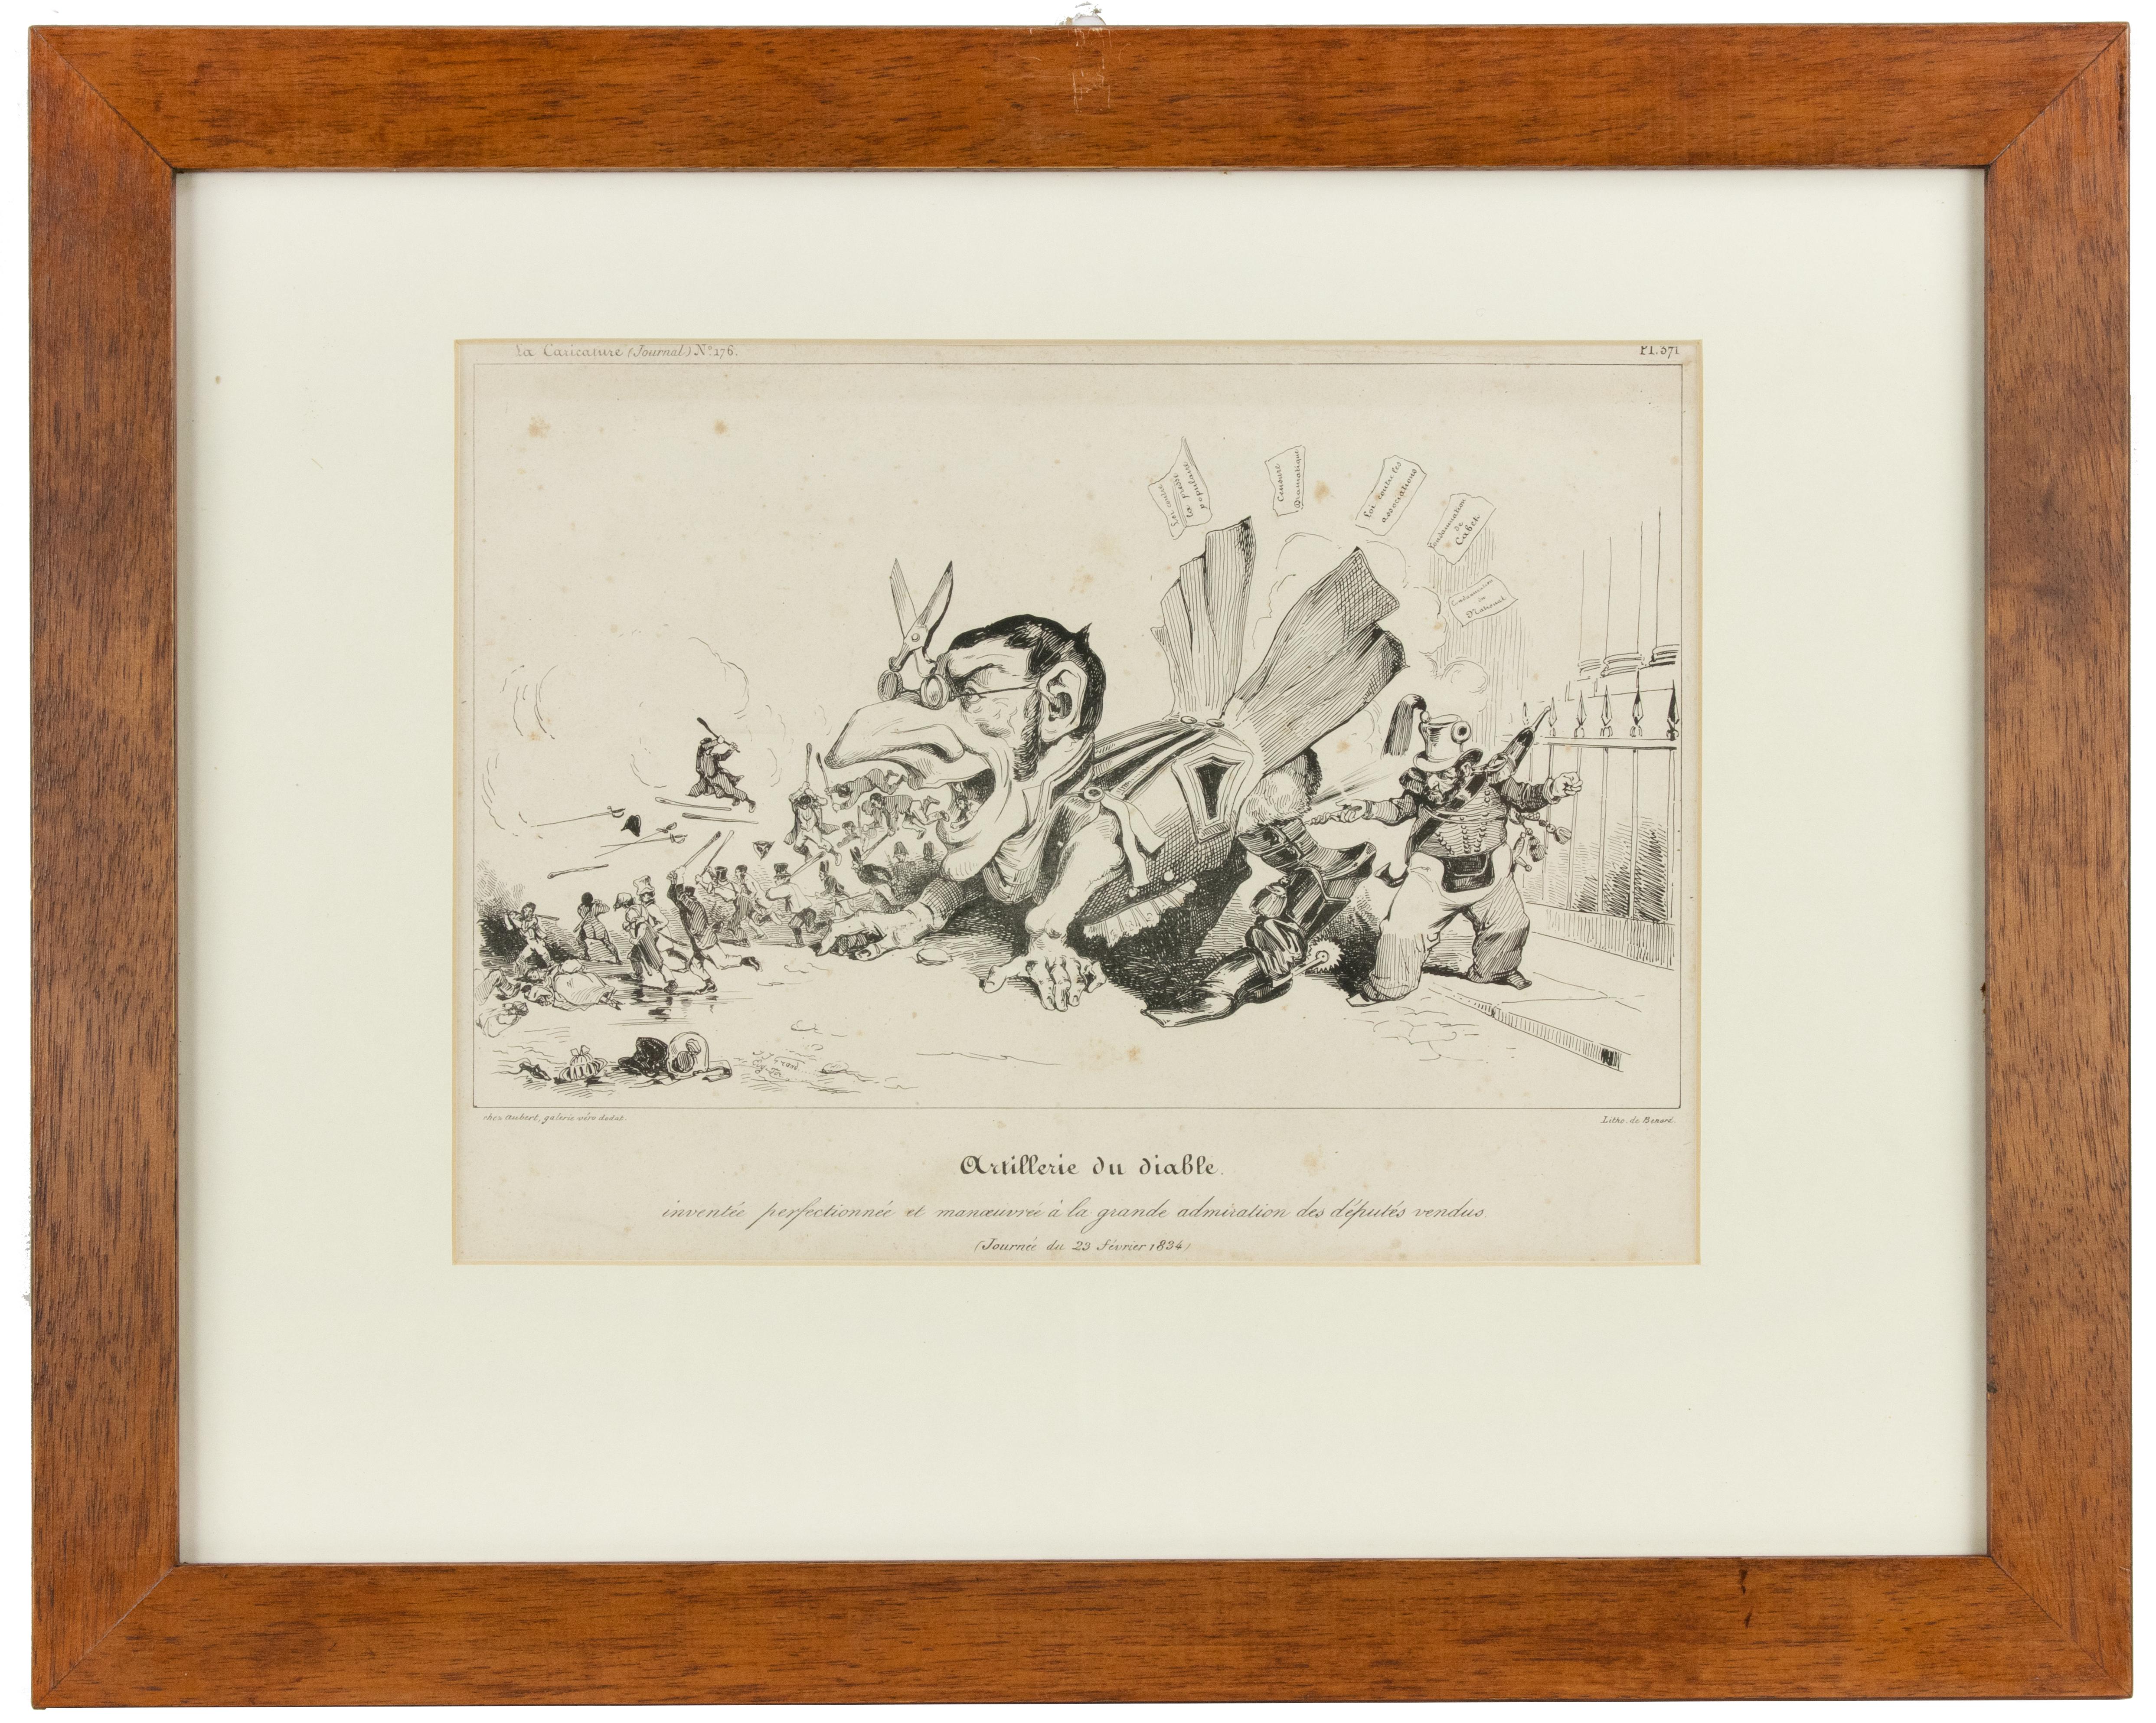 J. J. Grandville Figurative Print - L’artillerie du Diable  - Lithograph by J.J. Grandville - 1834